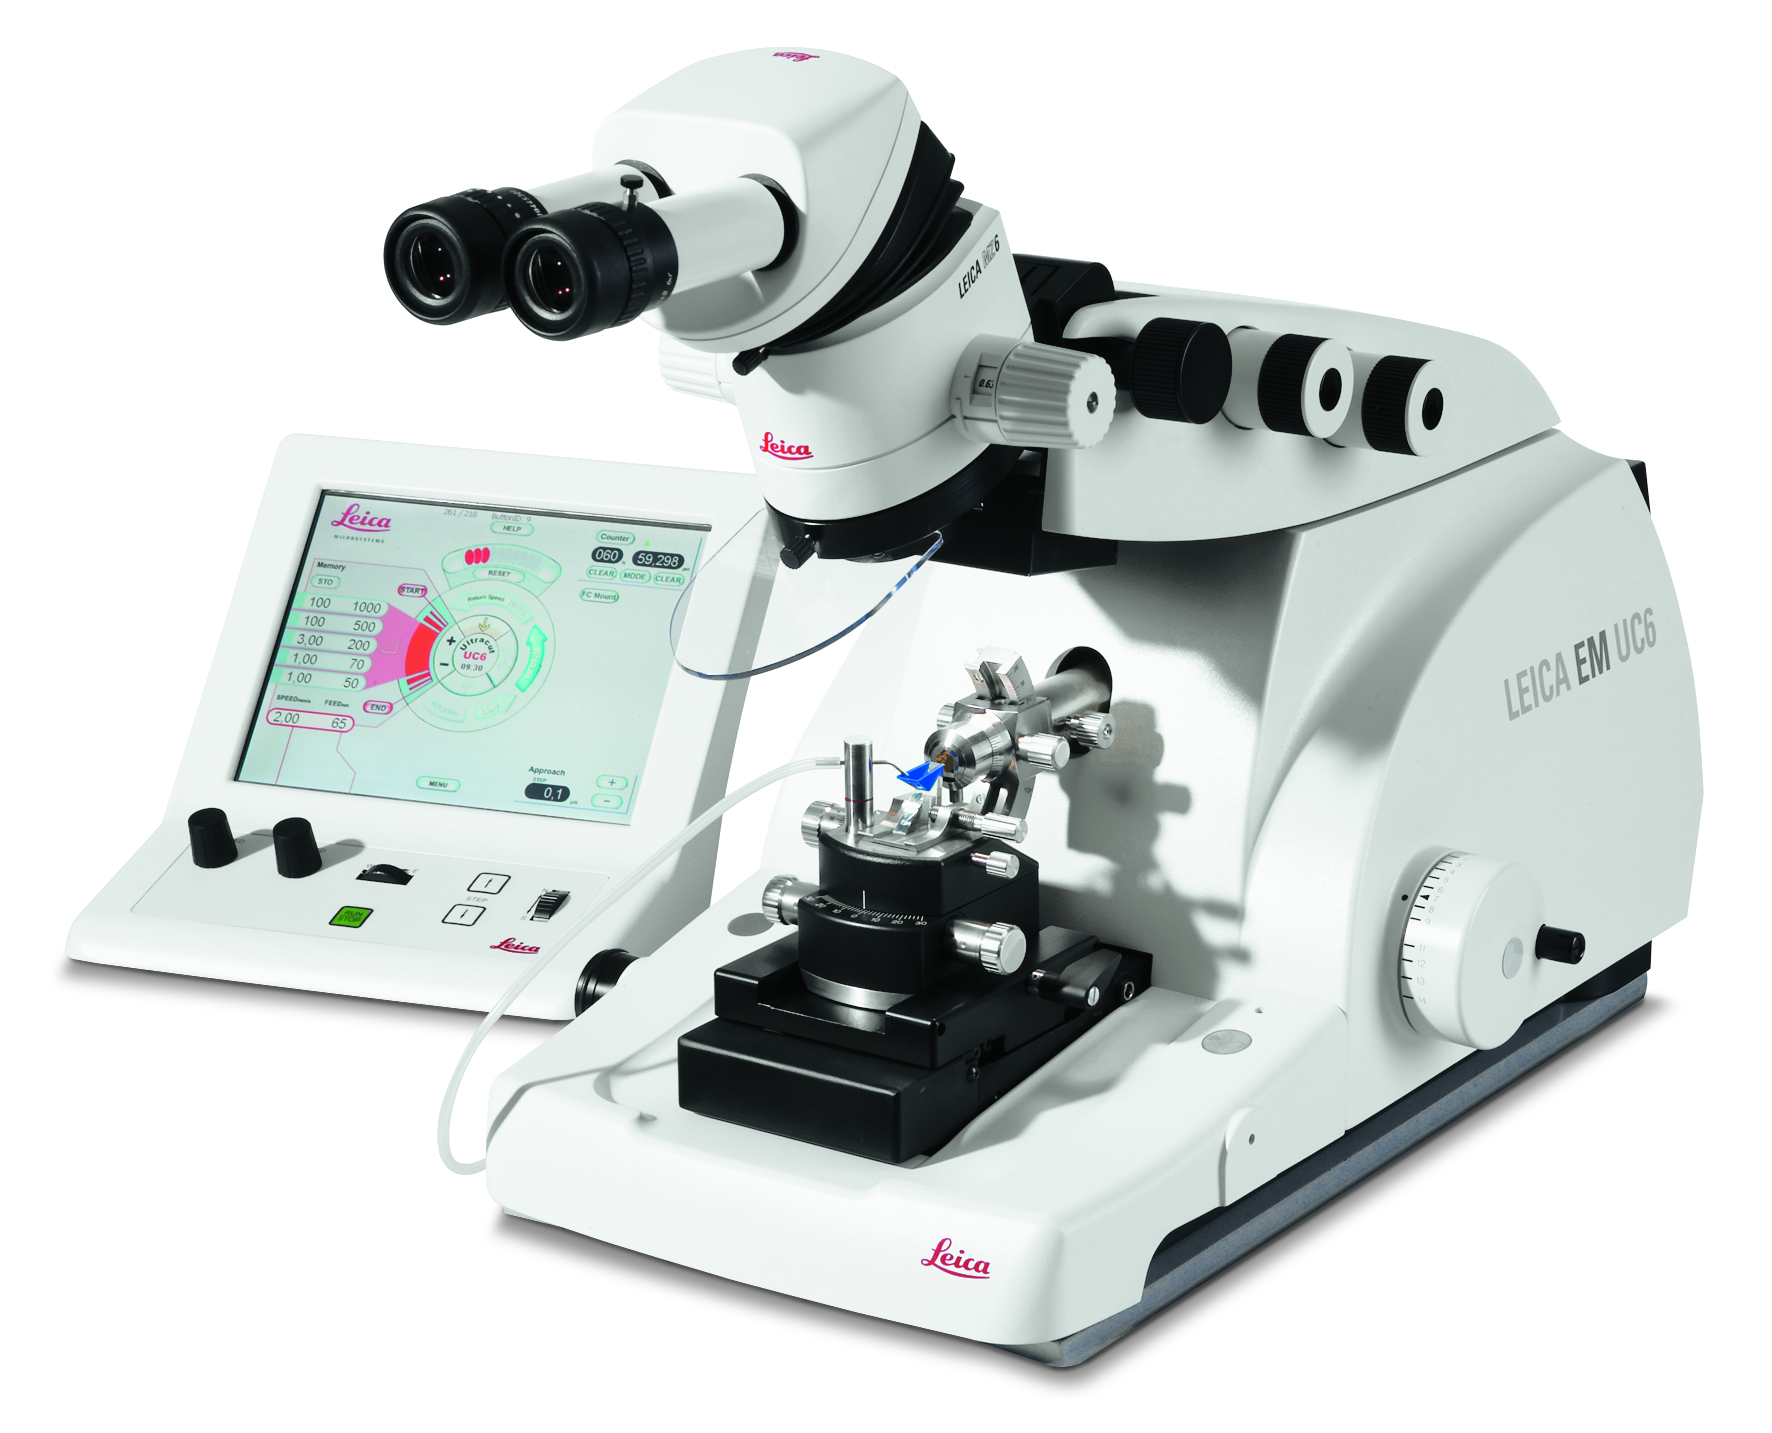 Ultramicrotomo Leica EM UC6 per il sezionamento ultra-sottile di campioni biologici e industriali